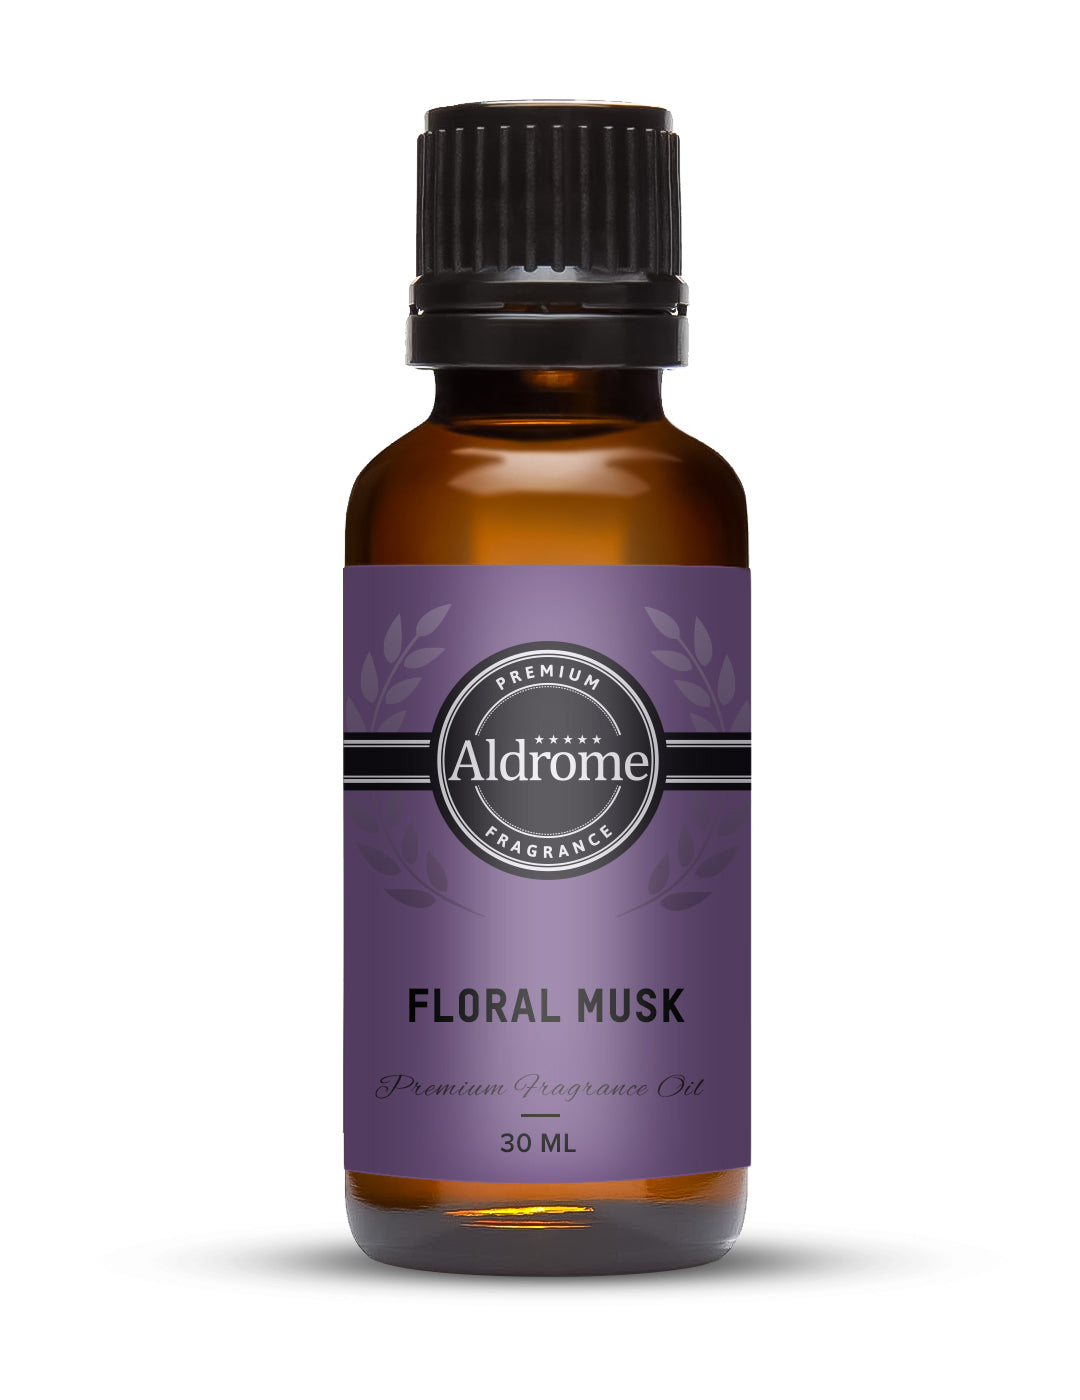 Floral Musk Fragrance Oil - 30ml | Buy Floral Musk Fragrance Oils Online at Best Prices